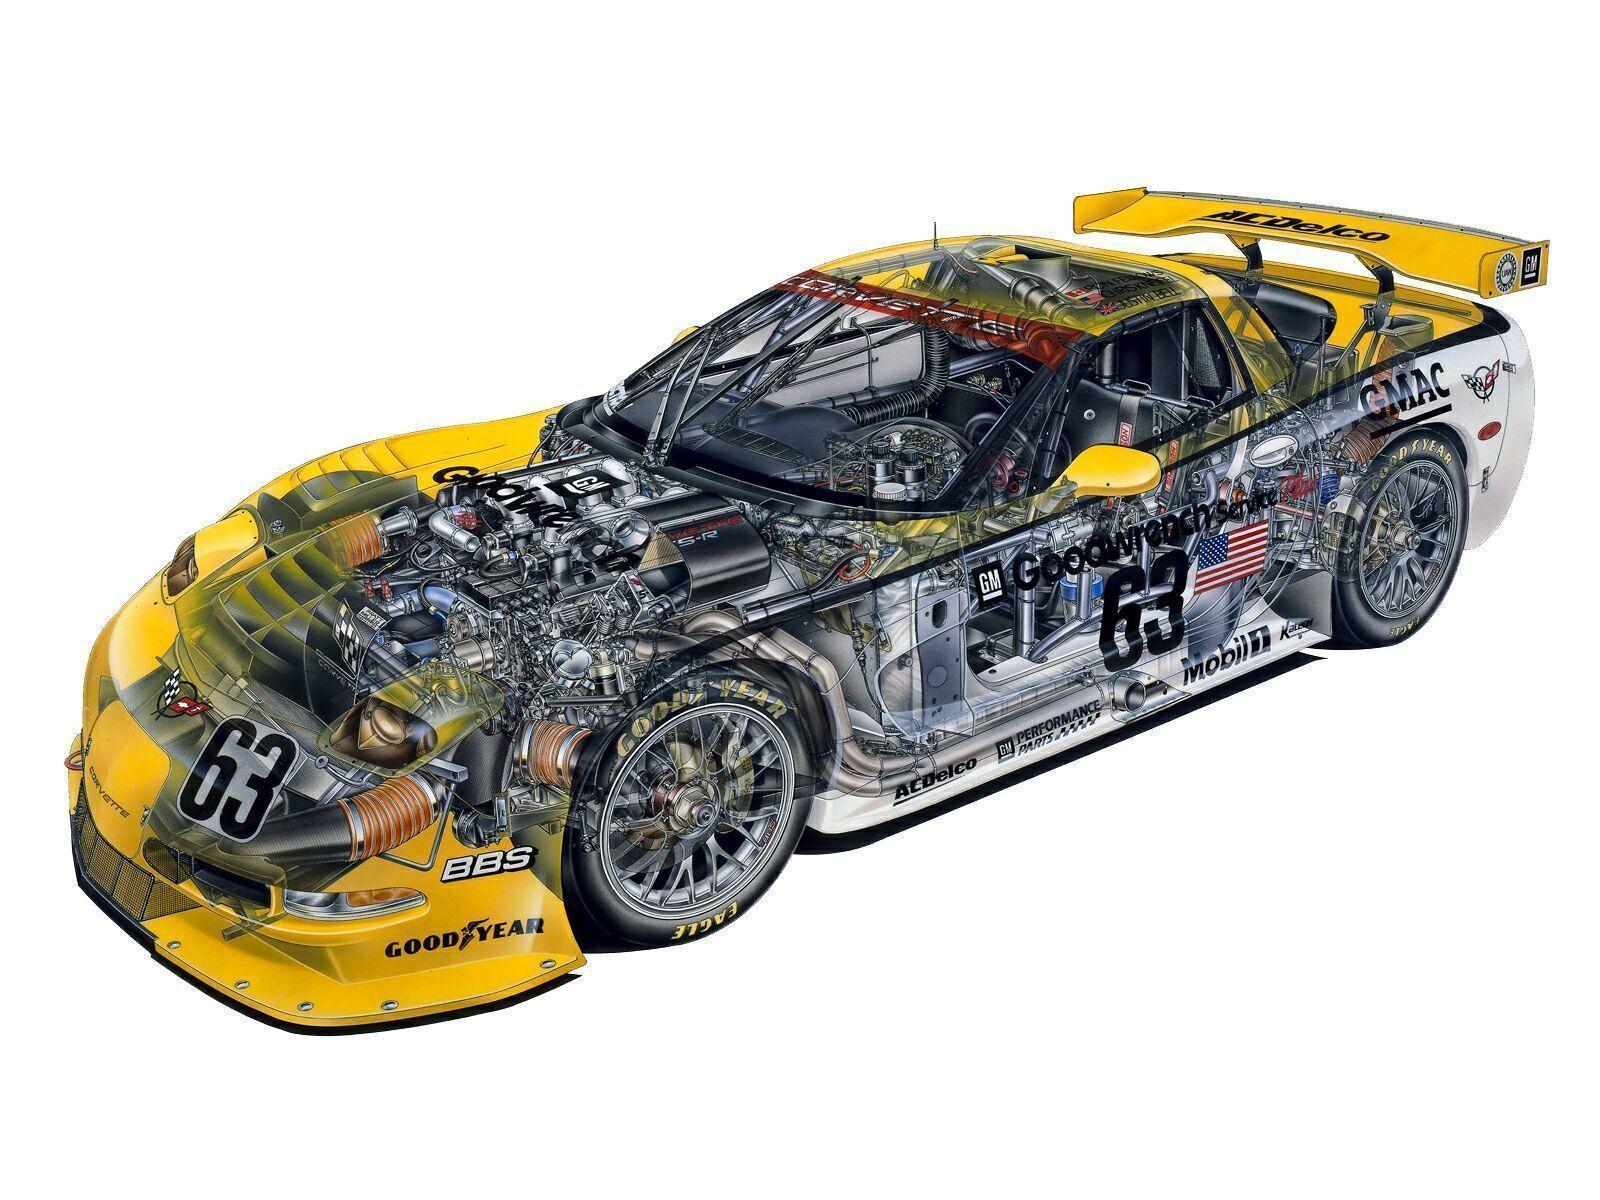 Wallpaper > 3D Wallpaper Desktop > 3D WALLPAPER DESKTOP RACE CAR